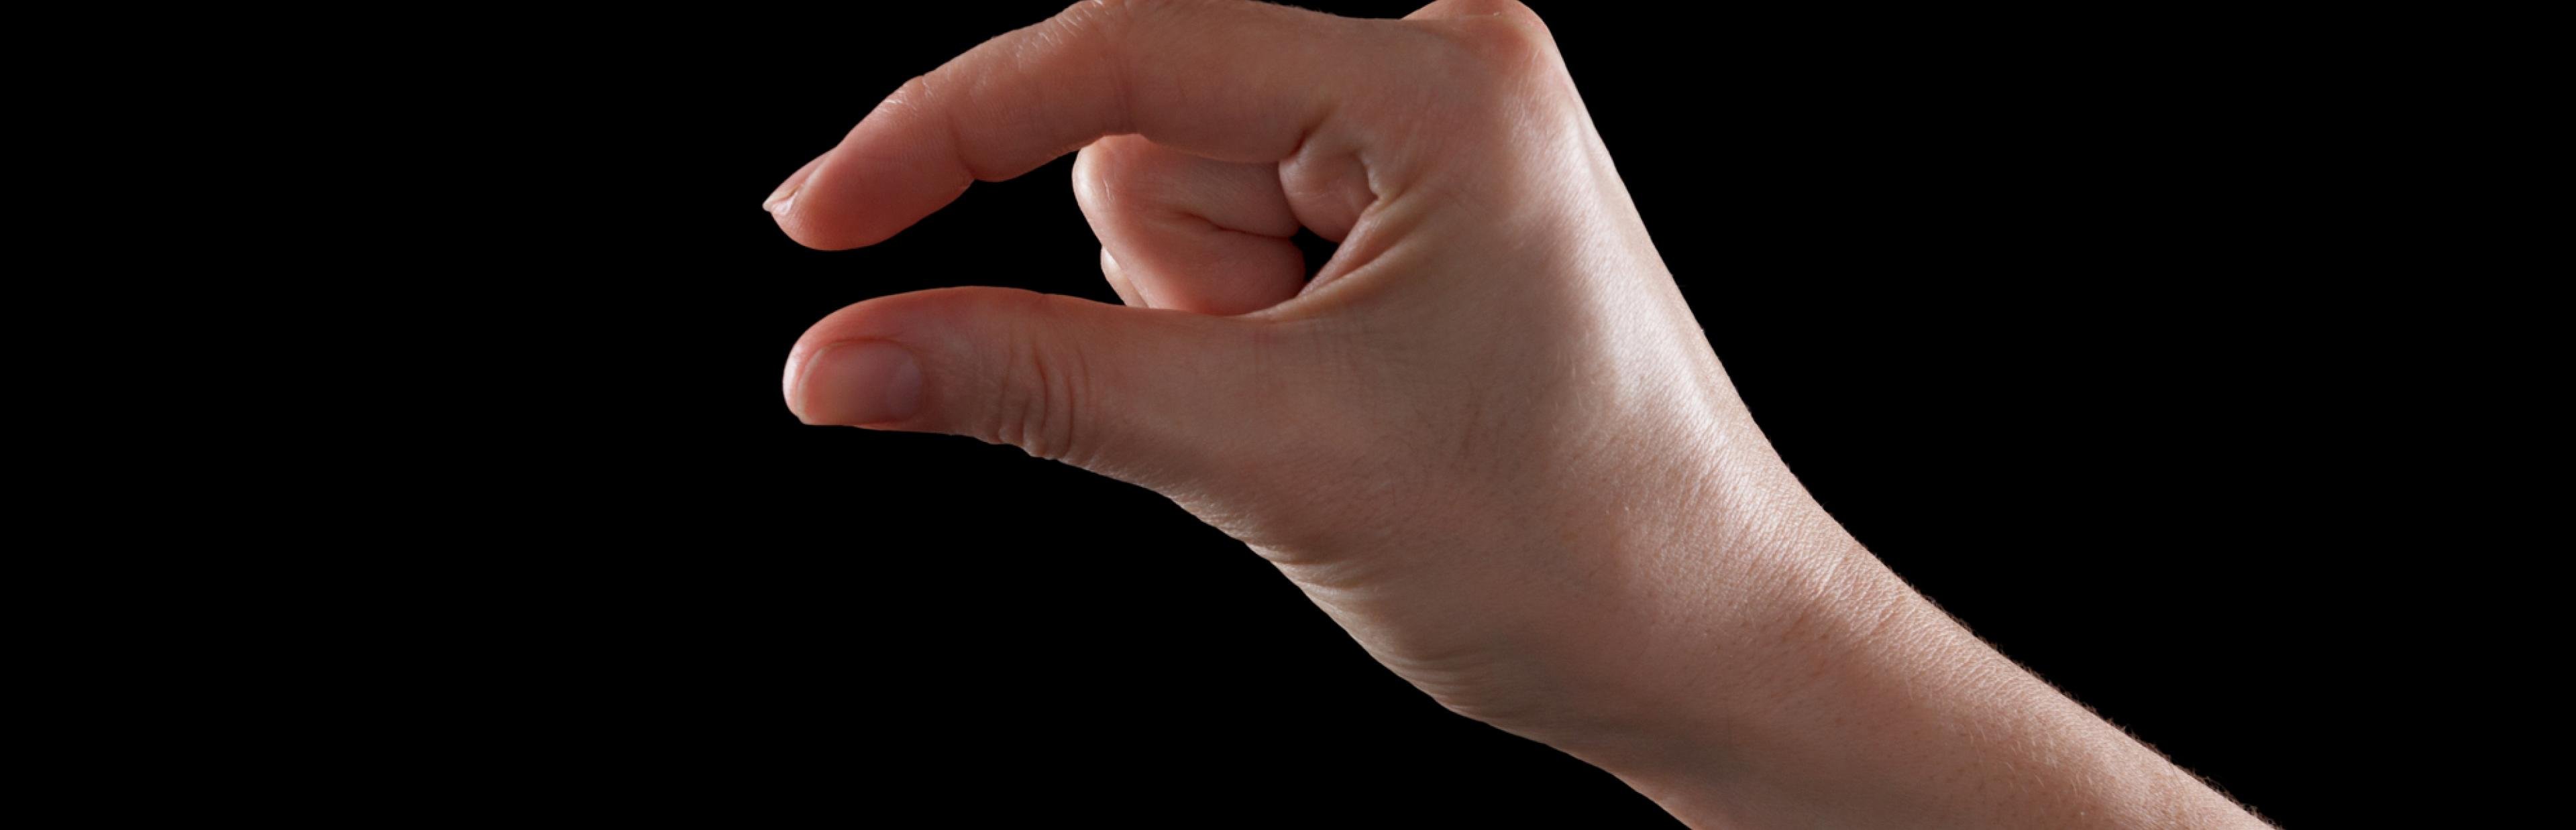 Eine Frauenhand hält die Finger nahe zusammen, um „klein“ zu signalisieren.